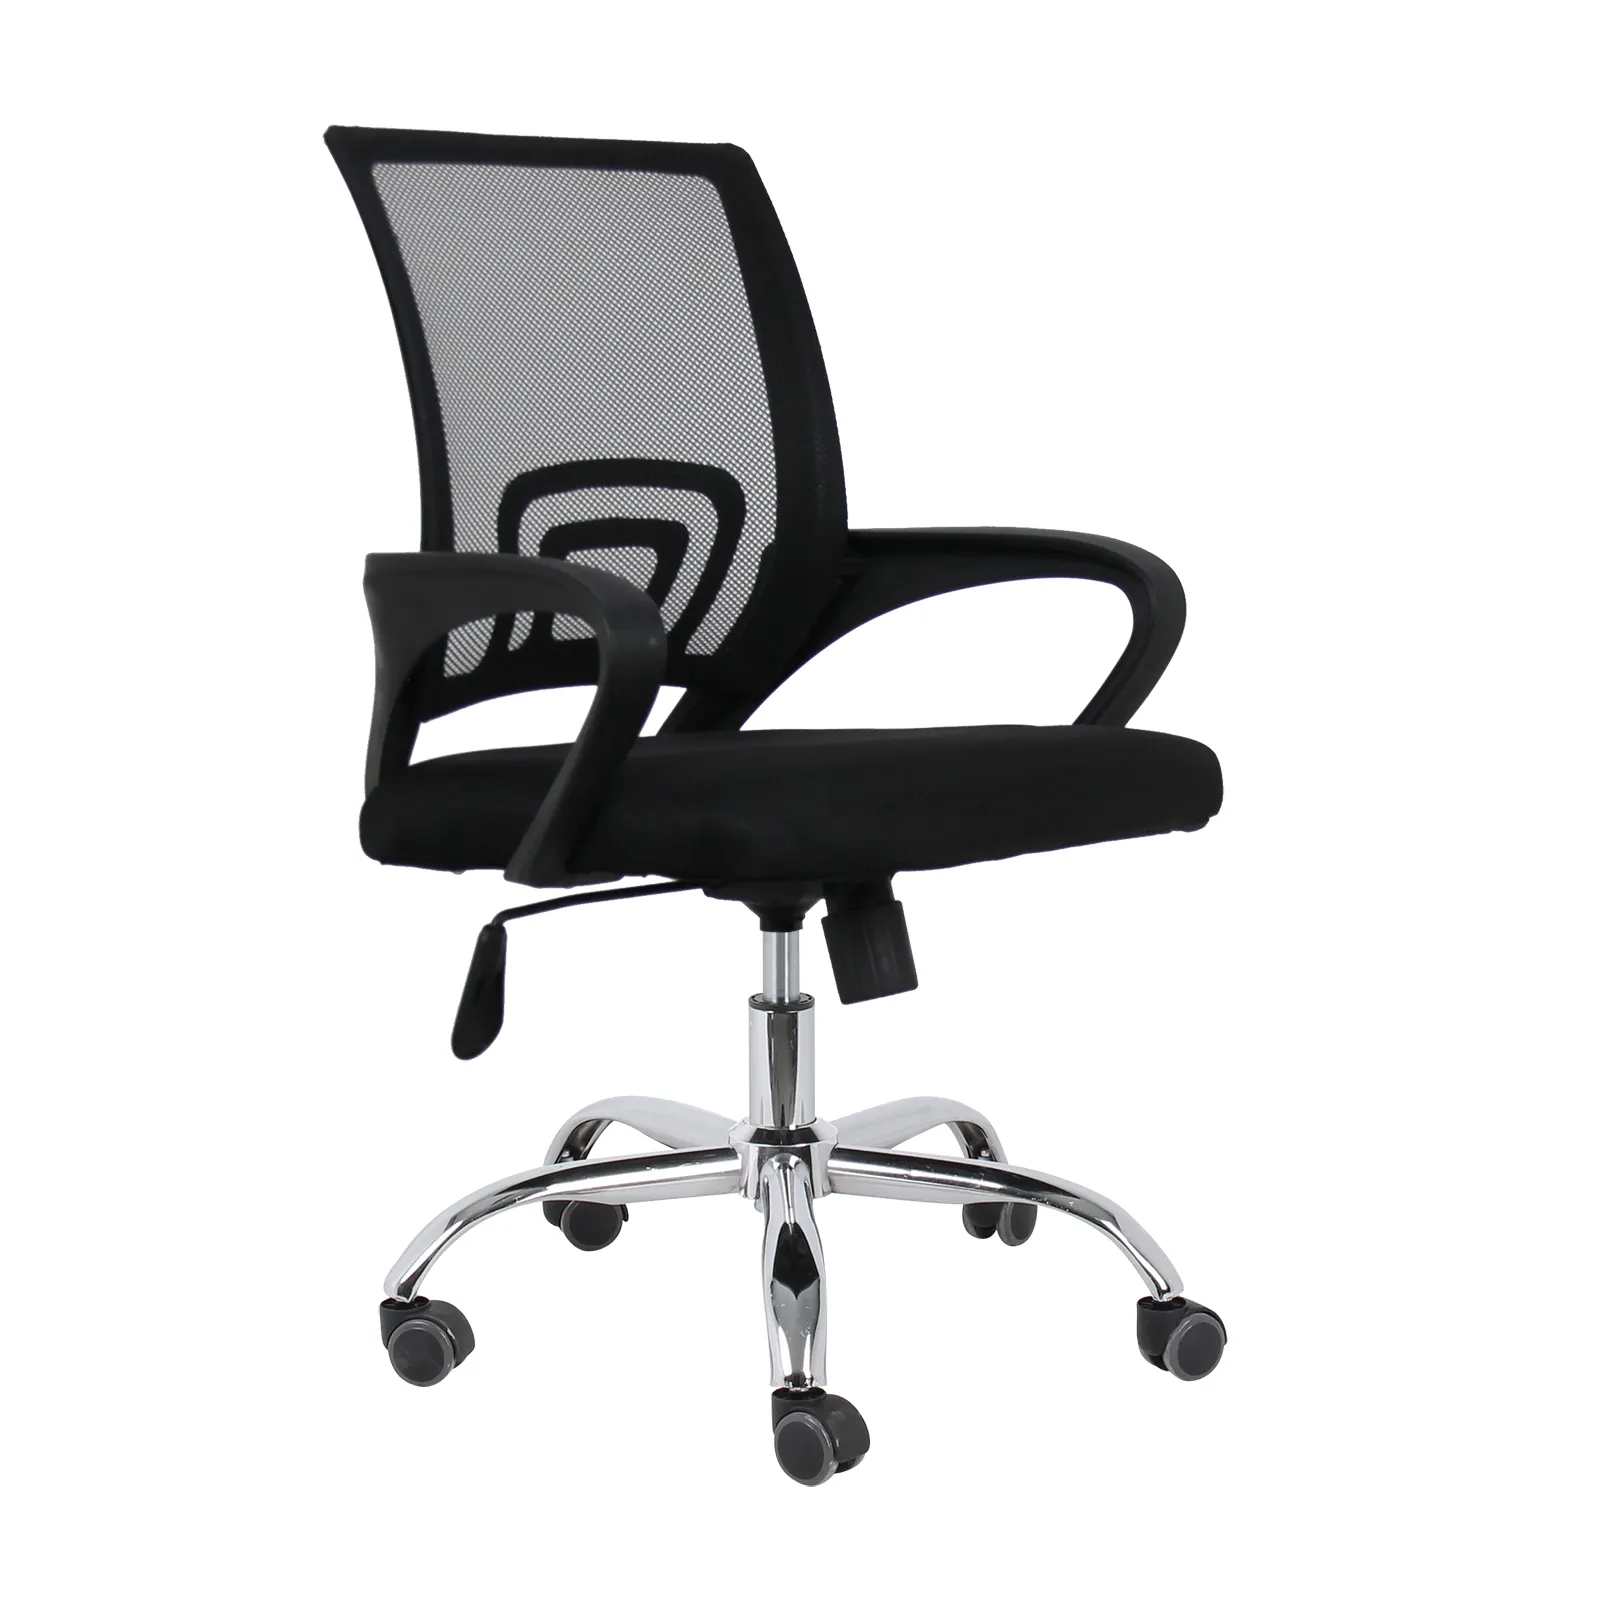 Grosir kursi jala kantor ergonomis hitam murah untuk ruang rumah